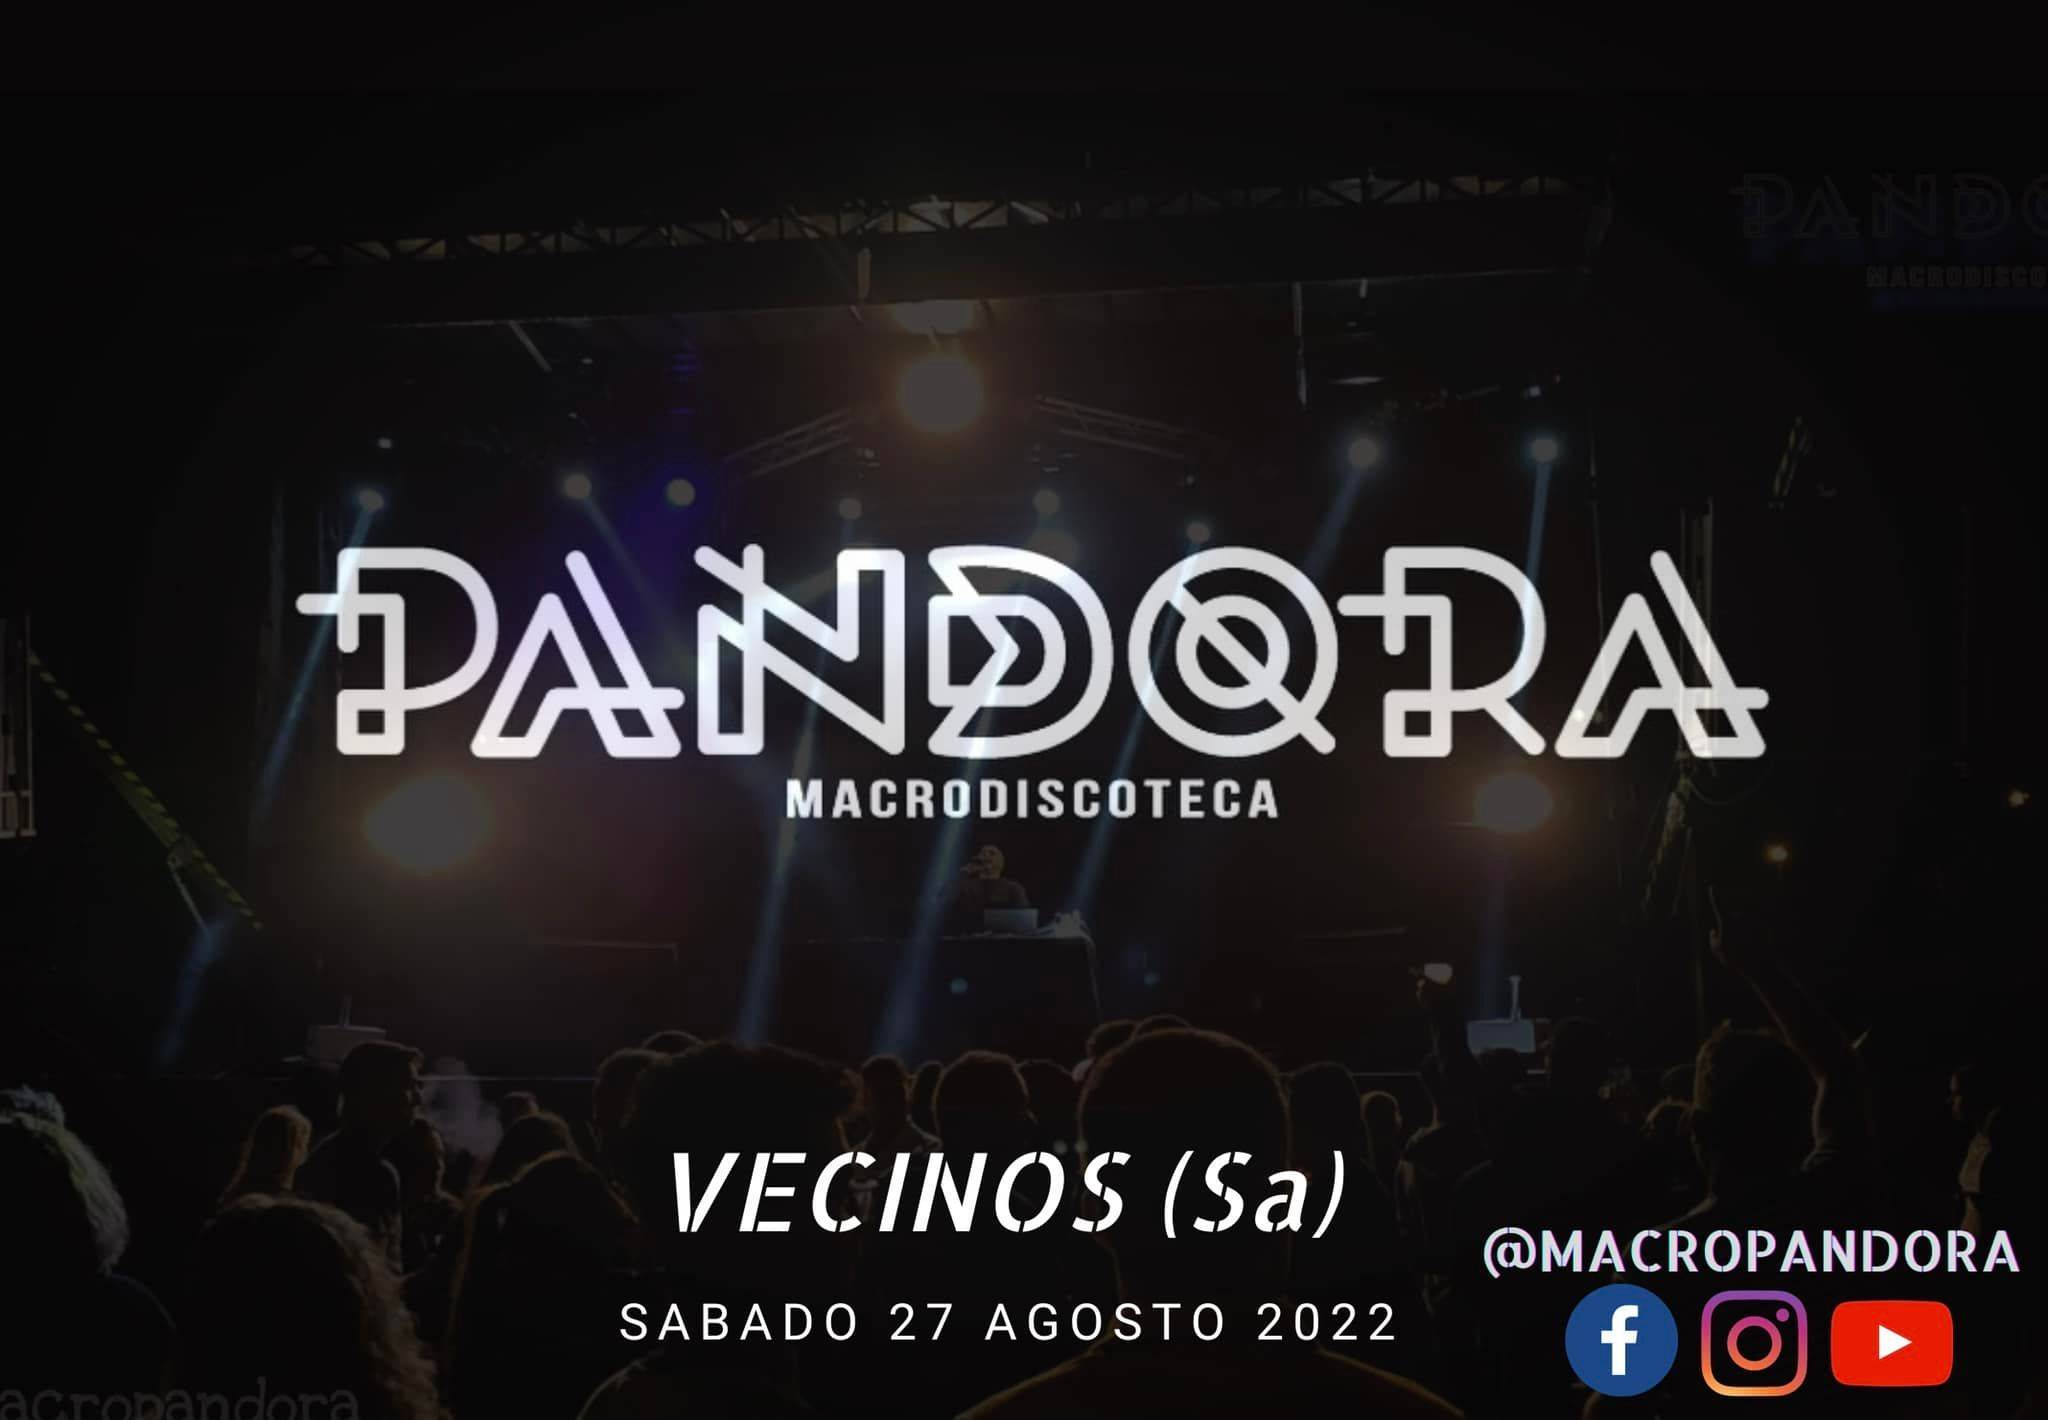 Macrodiscoteca Pandora (2022) - Vecinos (Salamanca)